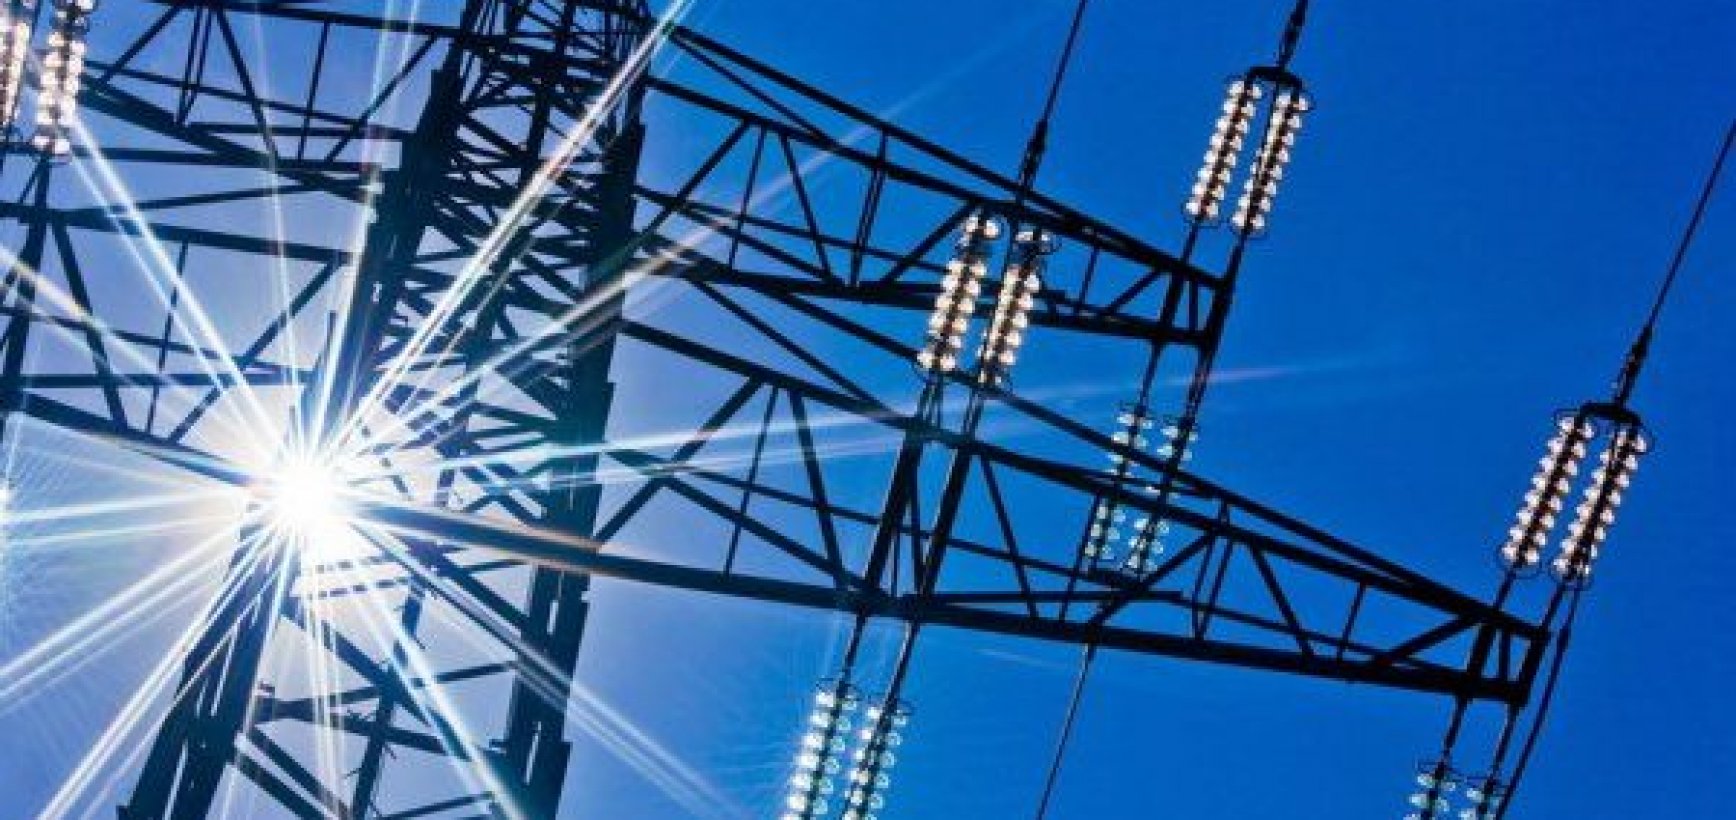 CPVA perėmė transeuropinių energetikos tinklų projektų valdymą 